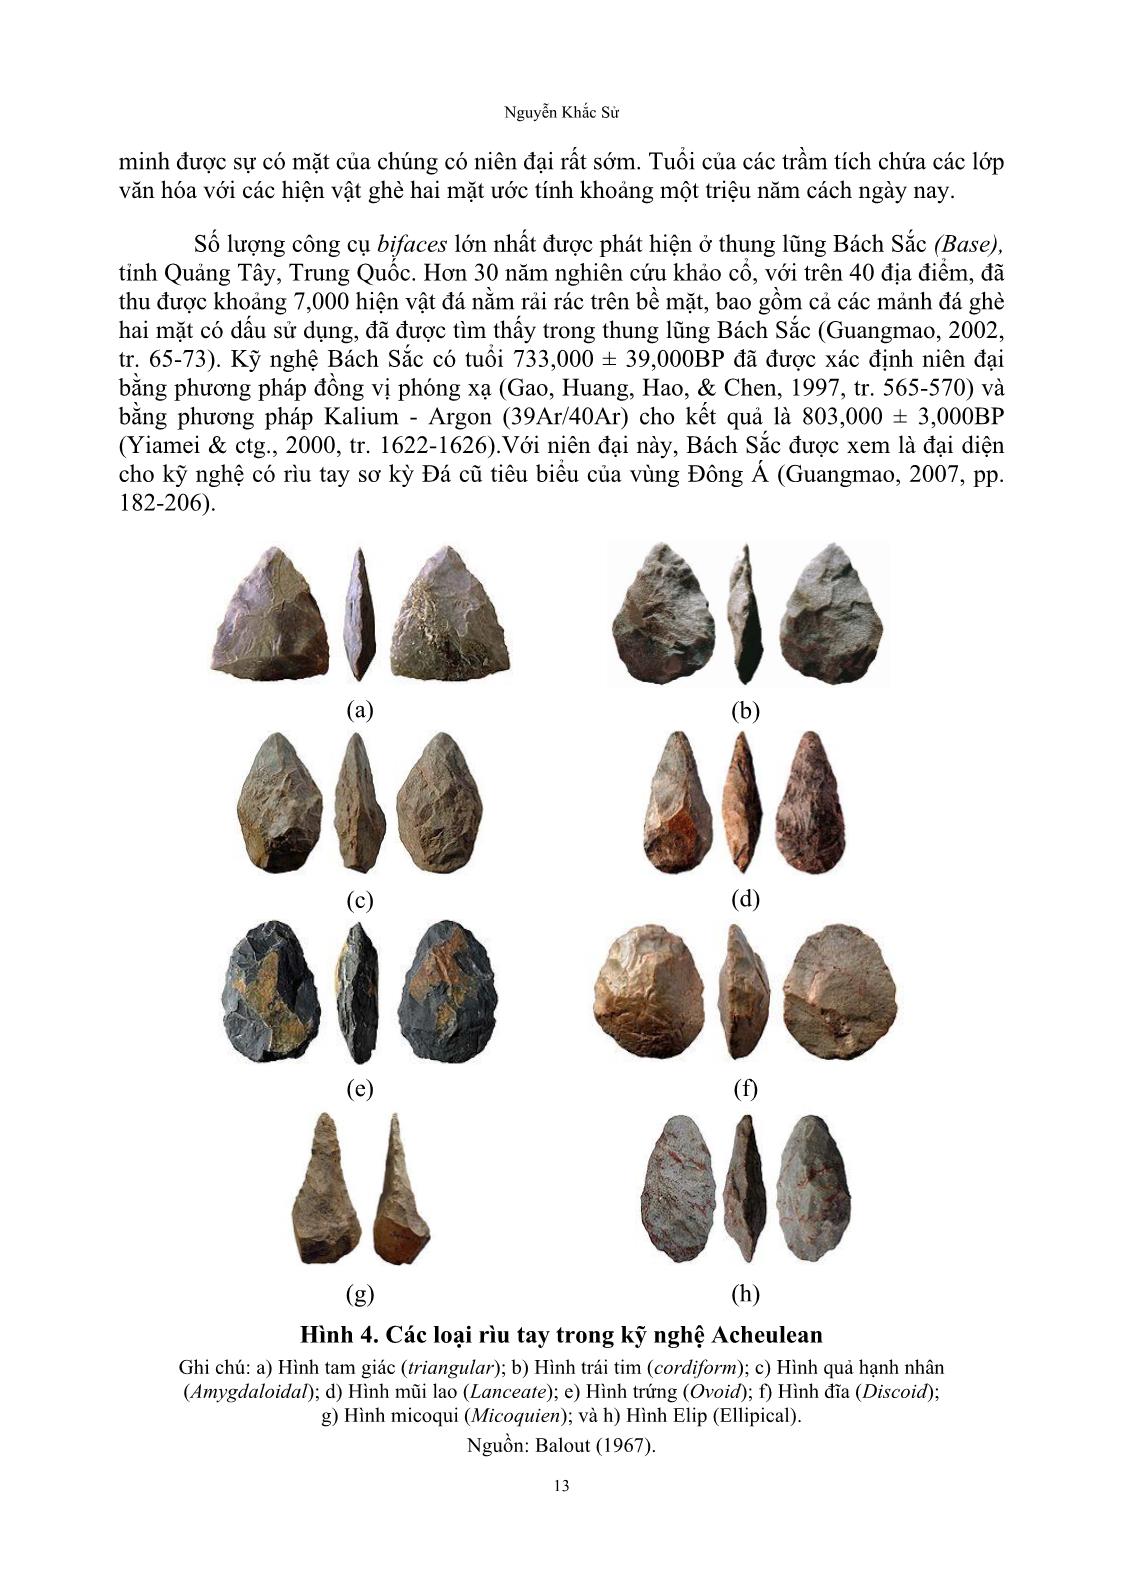 Kỹ nghệ sơ kỳ đá cũ An khê ở Việt Nam với cái gọi là con đường movius trang 7